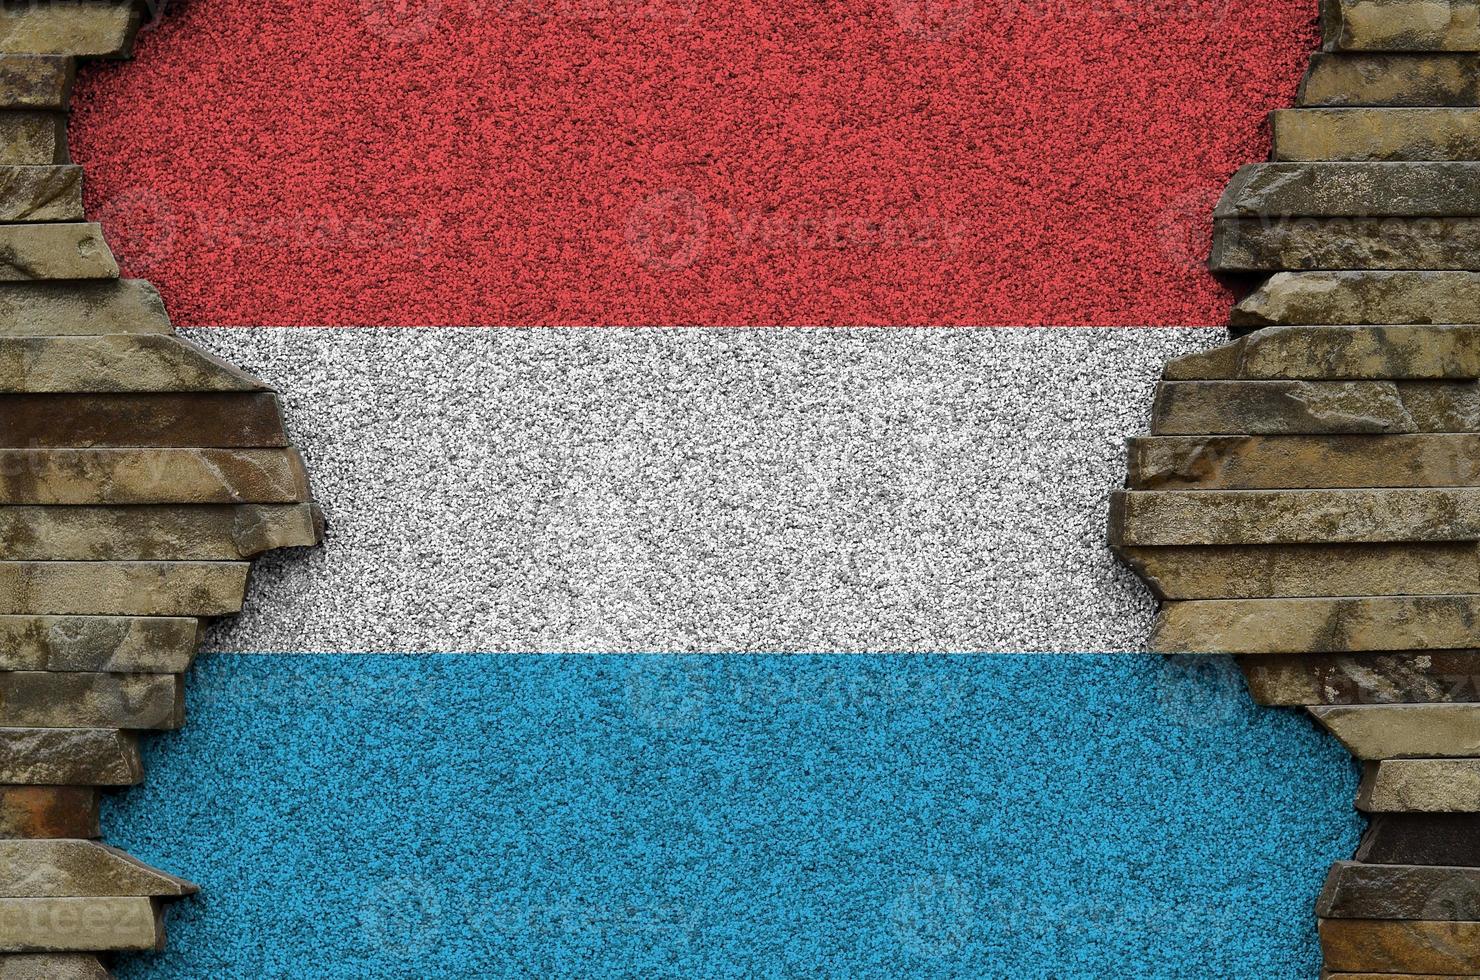 luxemburg flagga avbildad i måla färger på gammal sten vägg närbild. texturerad baner på sten vägg bakgrund foto